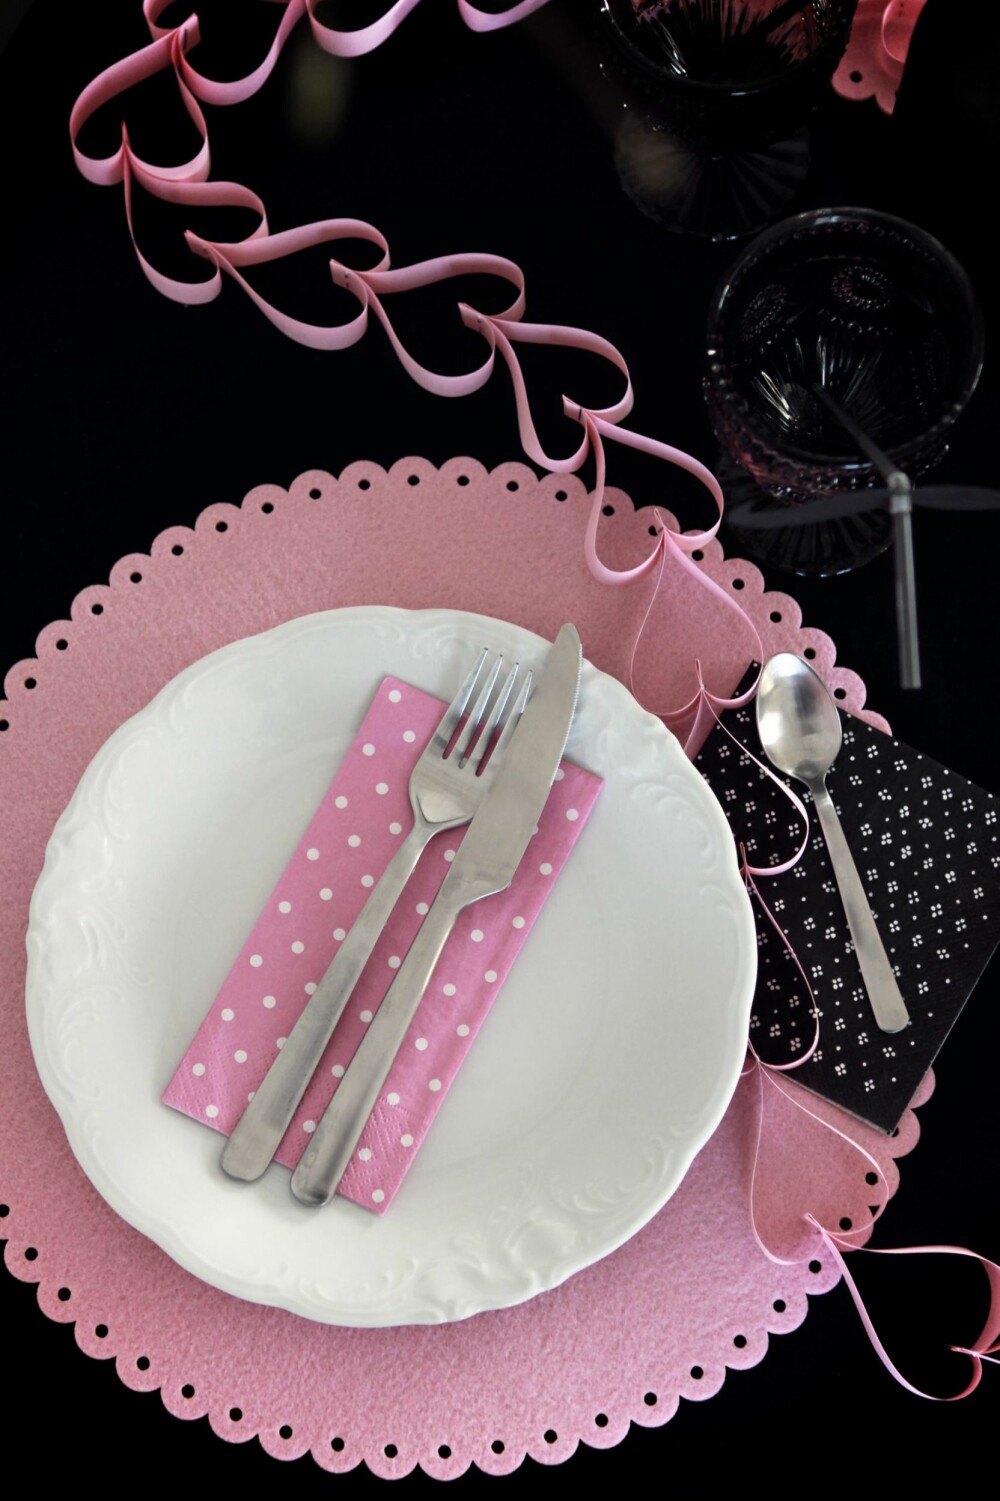 ROMANTIKK I LUFTEN: Denne borddekkingen gjør seg om du ønsker en romantisk stemning.